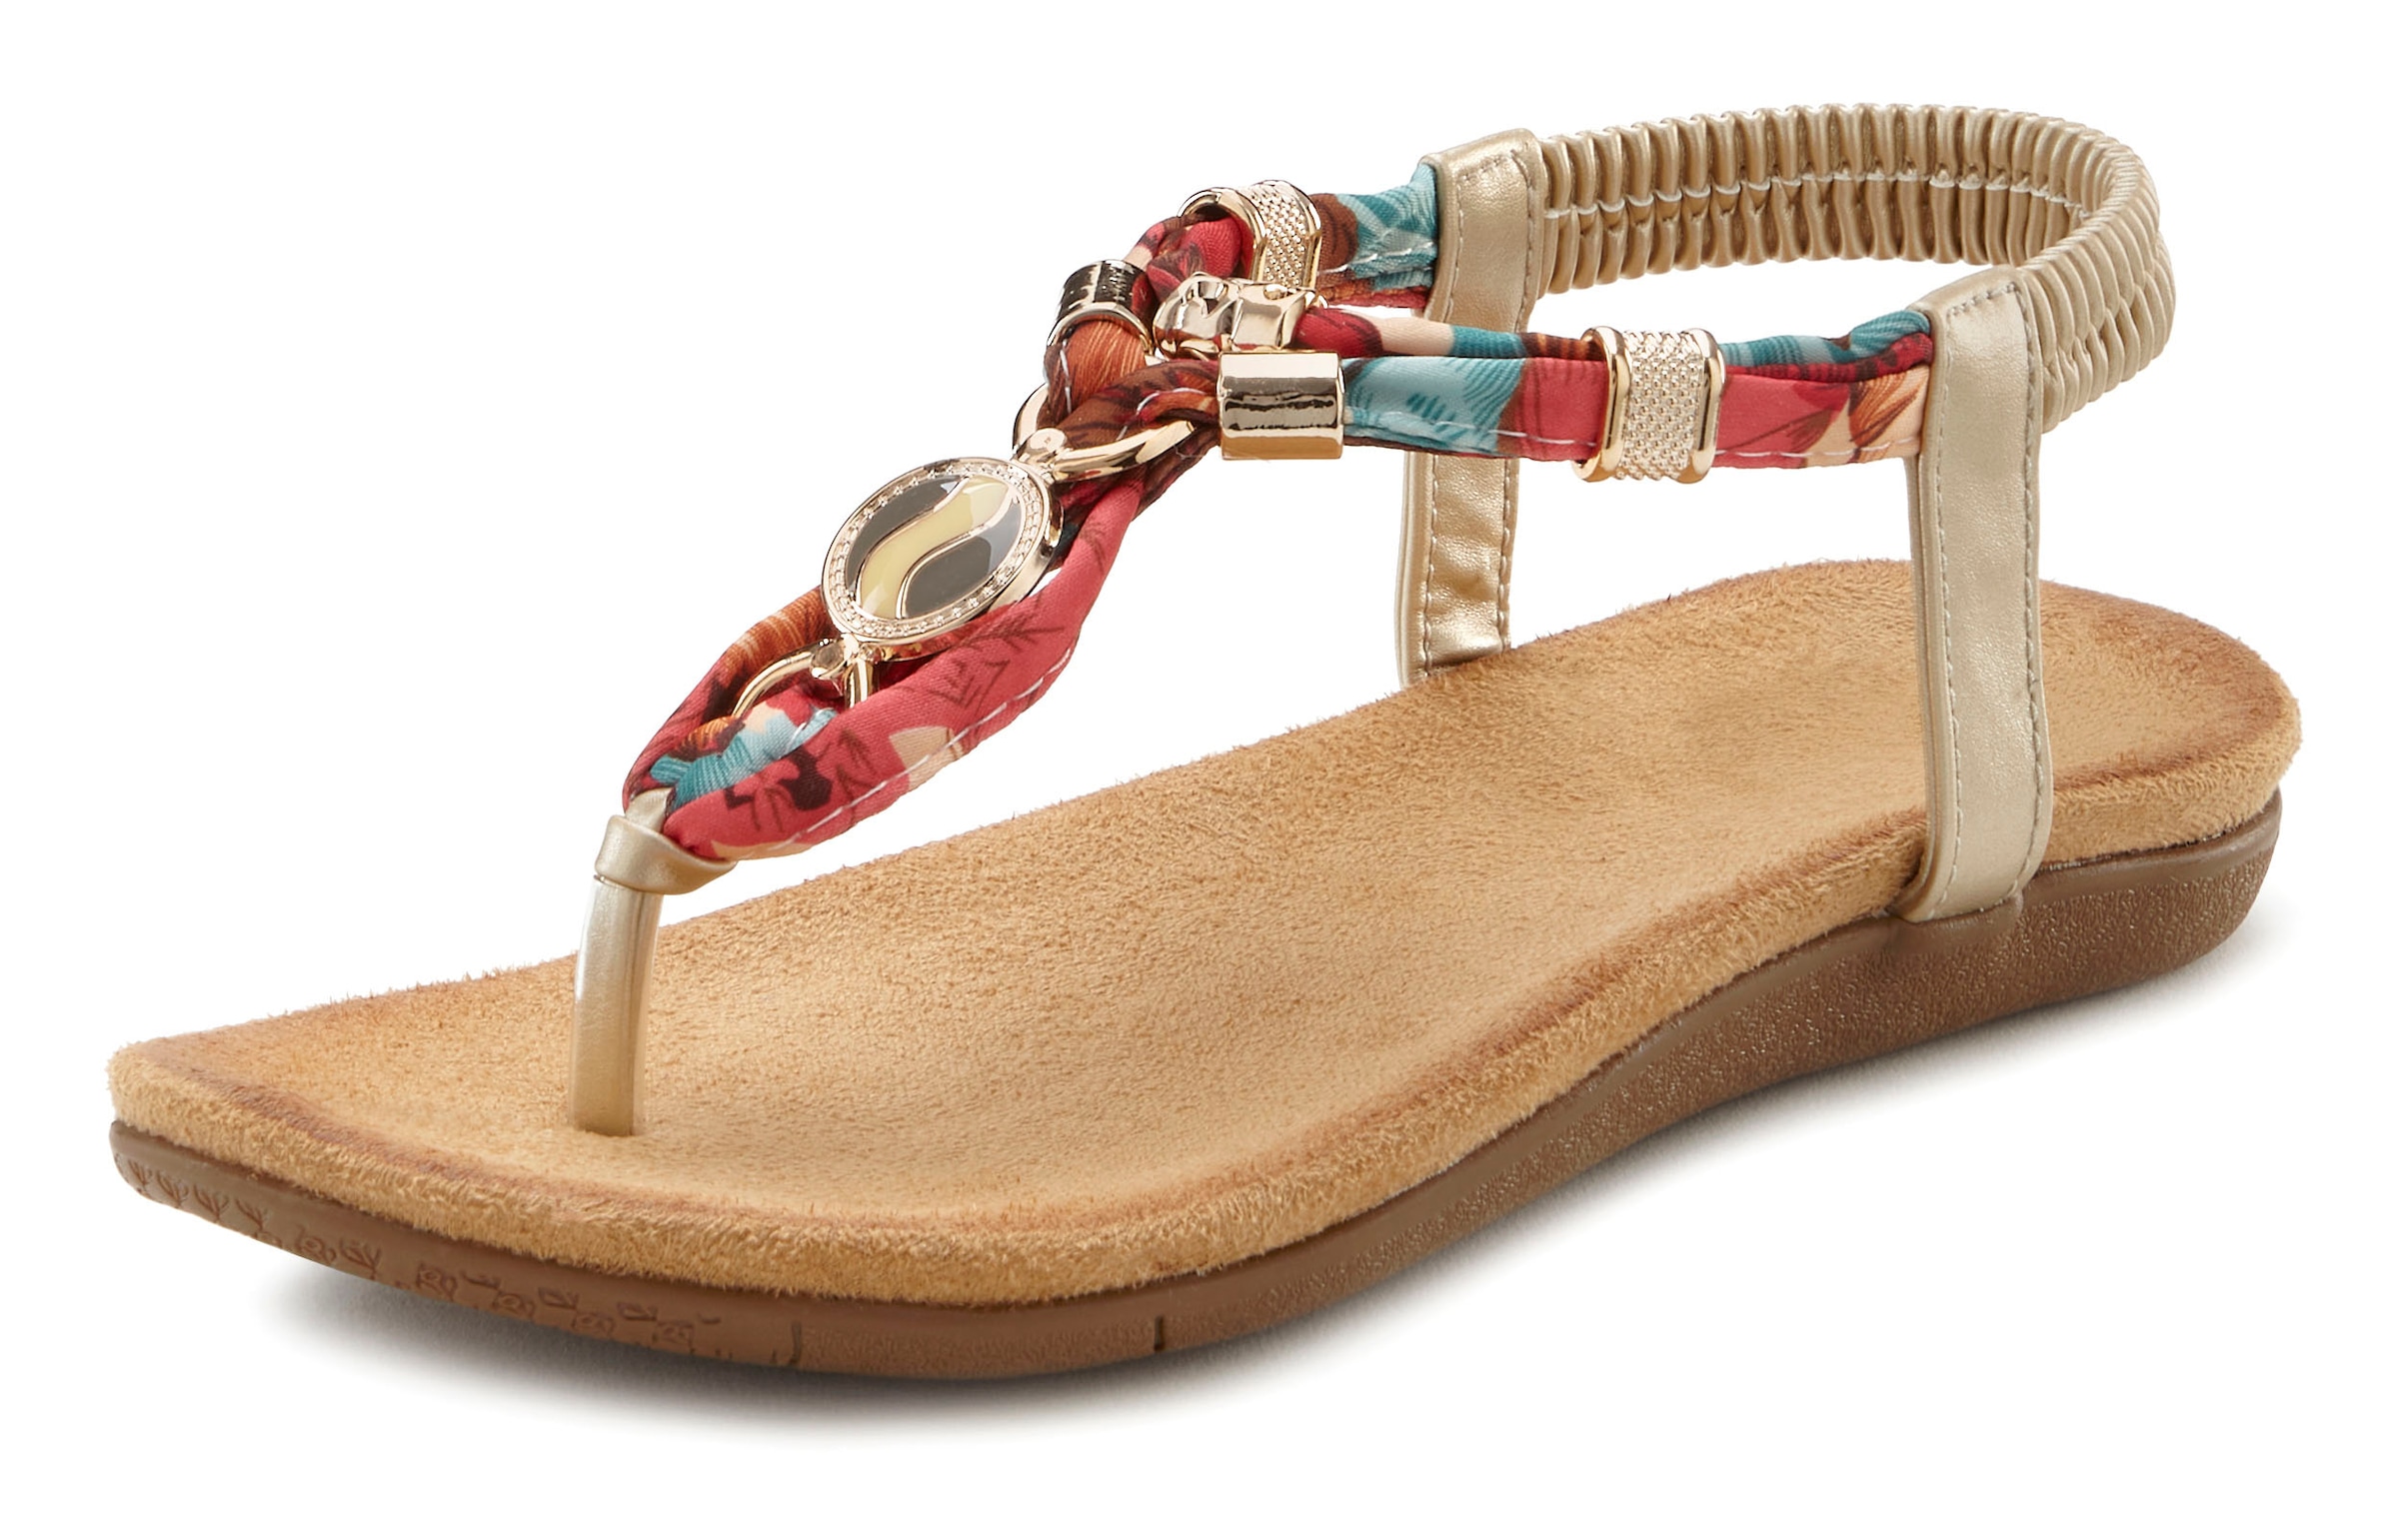 LASCANA Zehentrenner, Sandale mit elastischen Riemchen und modischer Farbgebung